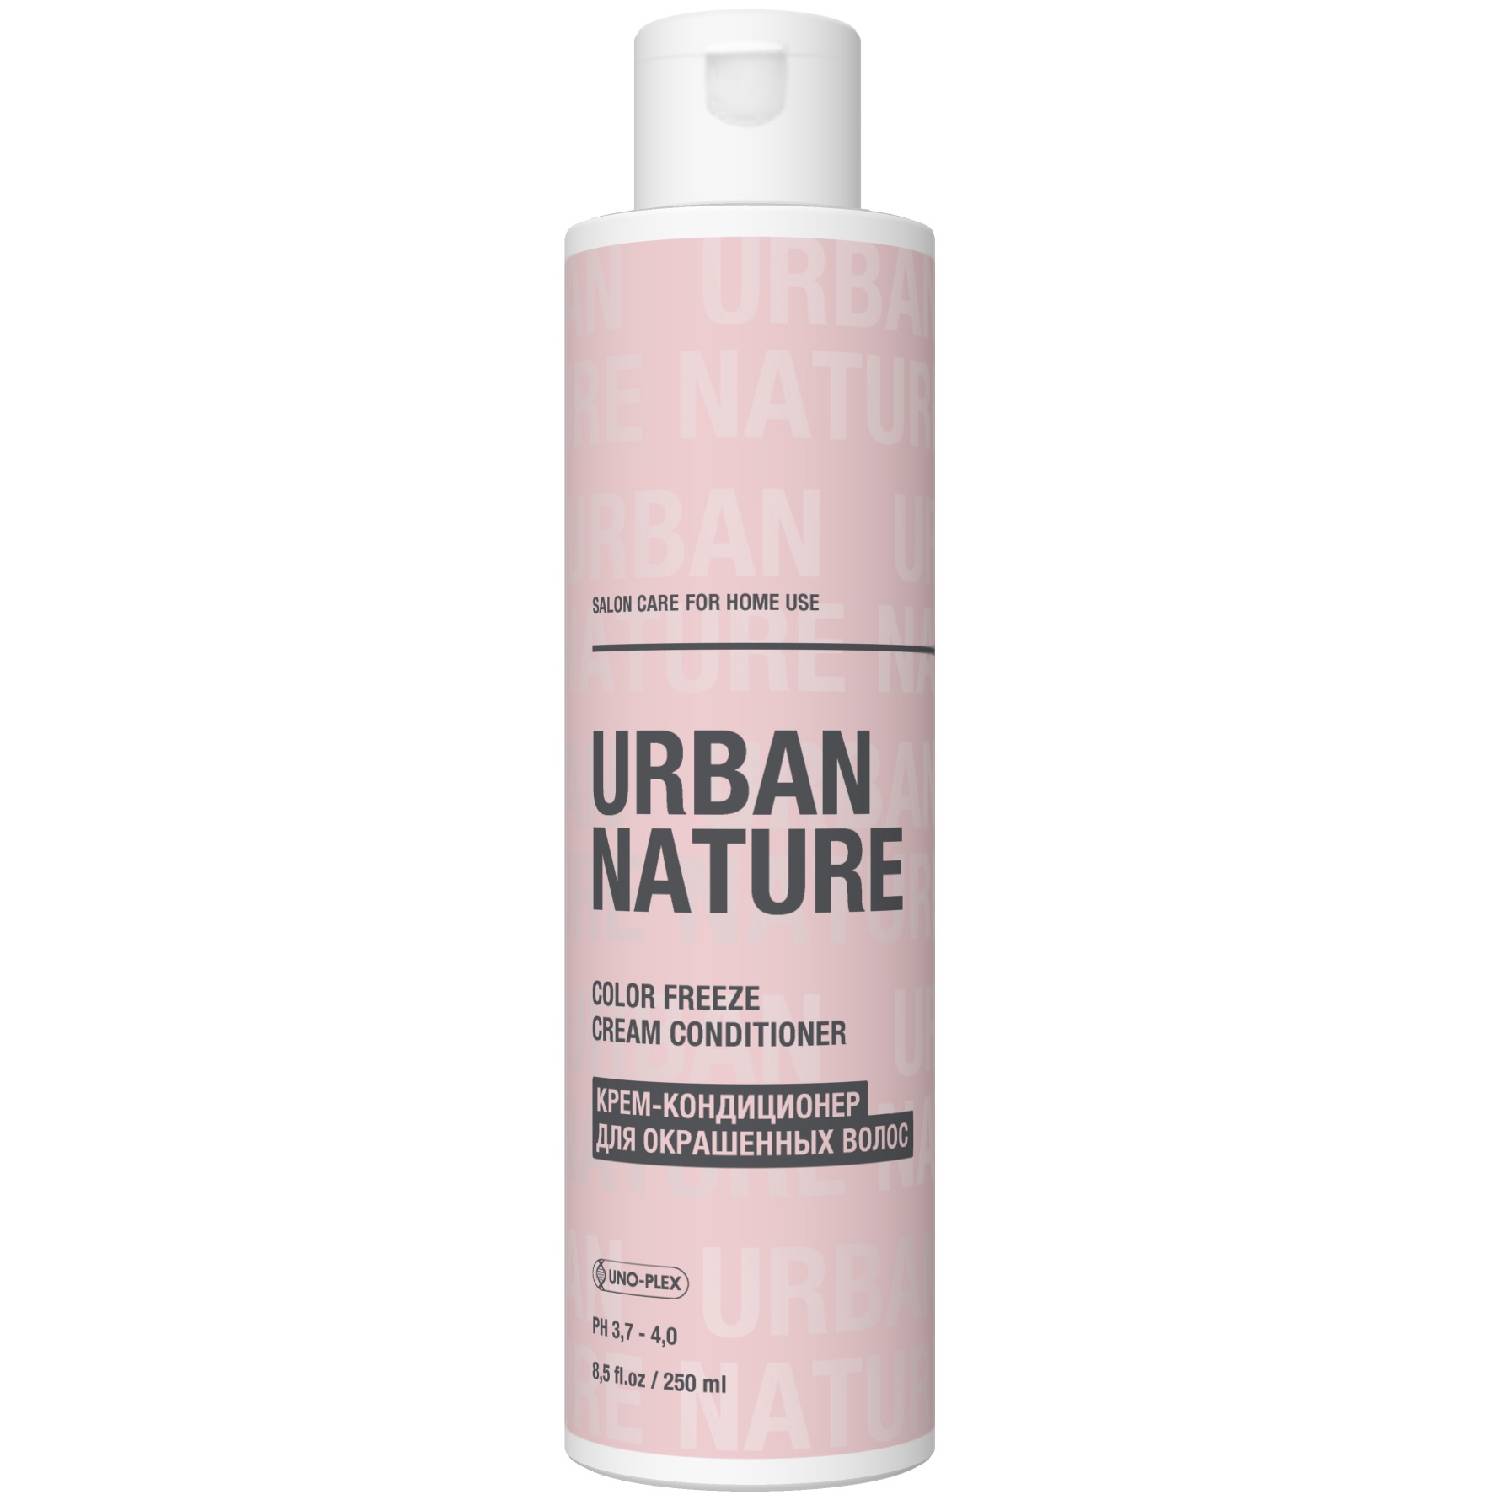 Urban Nature Крем-кондиционер для окрашенных волос, 250 мл (Urban Nature, Color Freeze) цена и фото